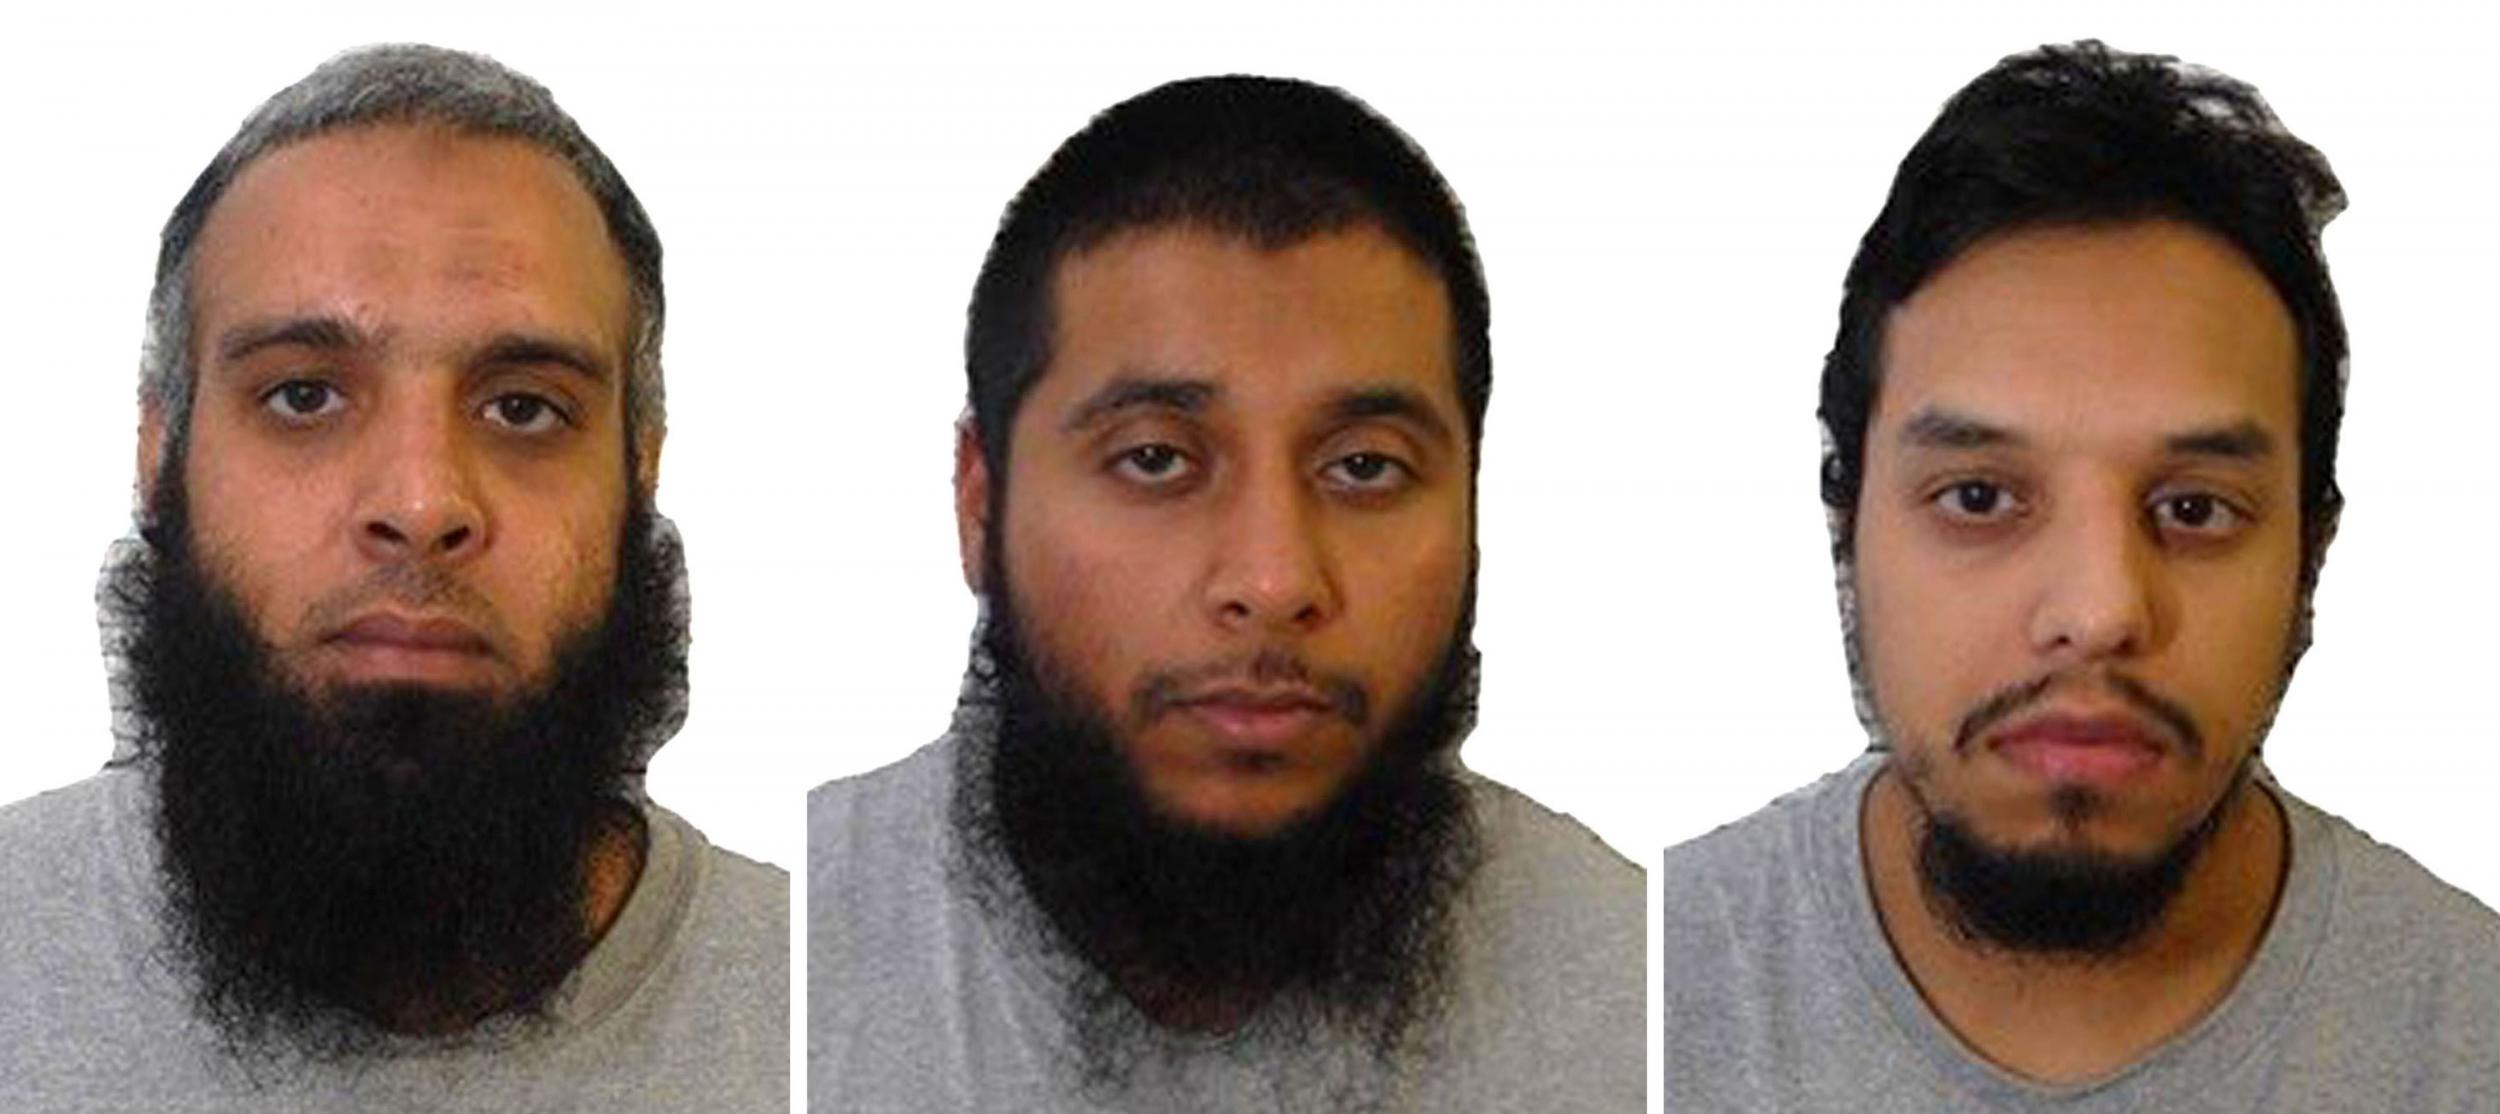 Terror plotters Naweed Ali, Khobaib Hussain and Mohibur Rahman, who were jailed in 2017, met in HMP Belmarsh